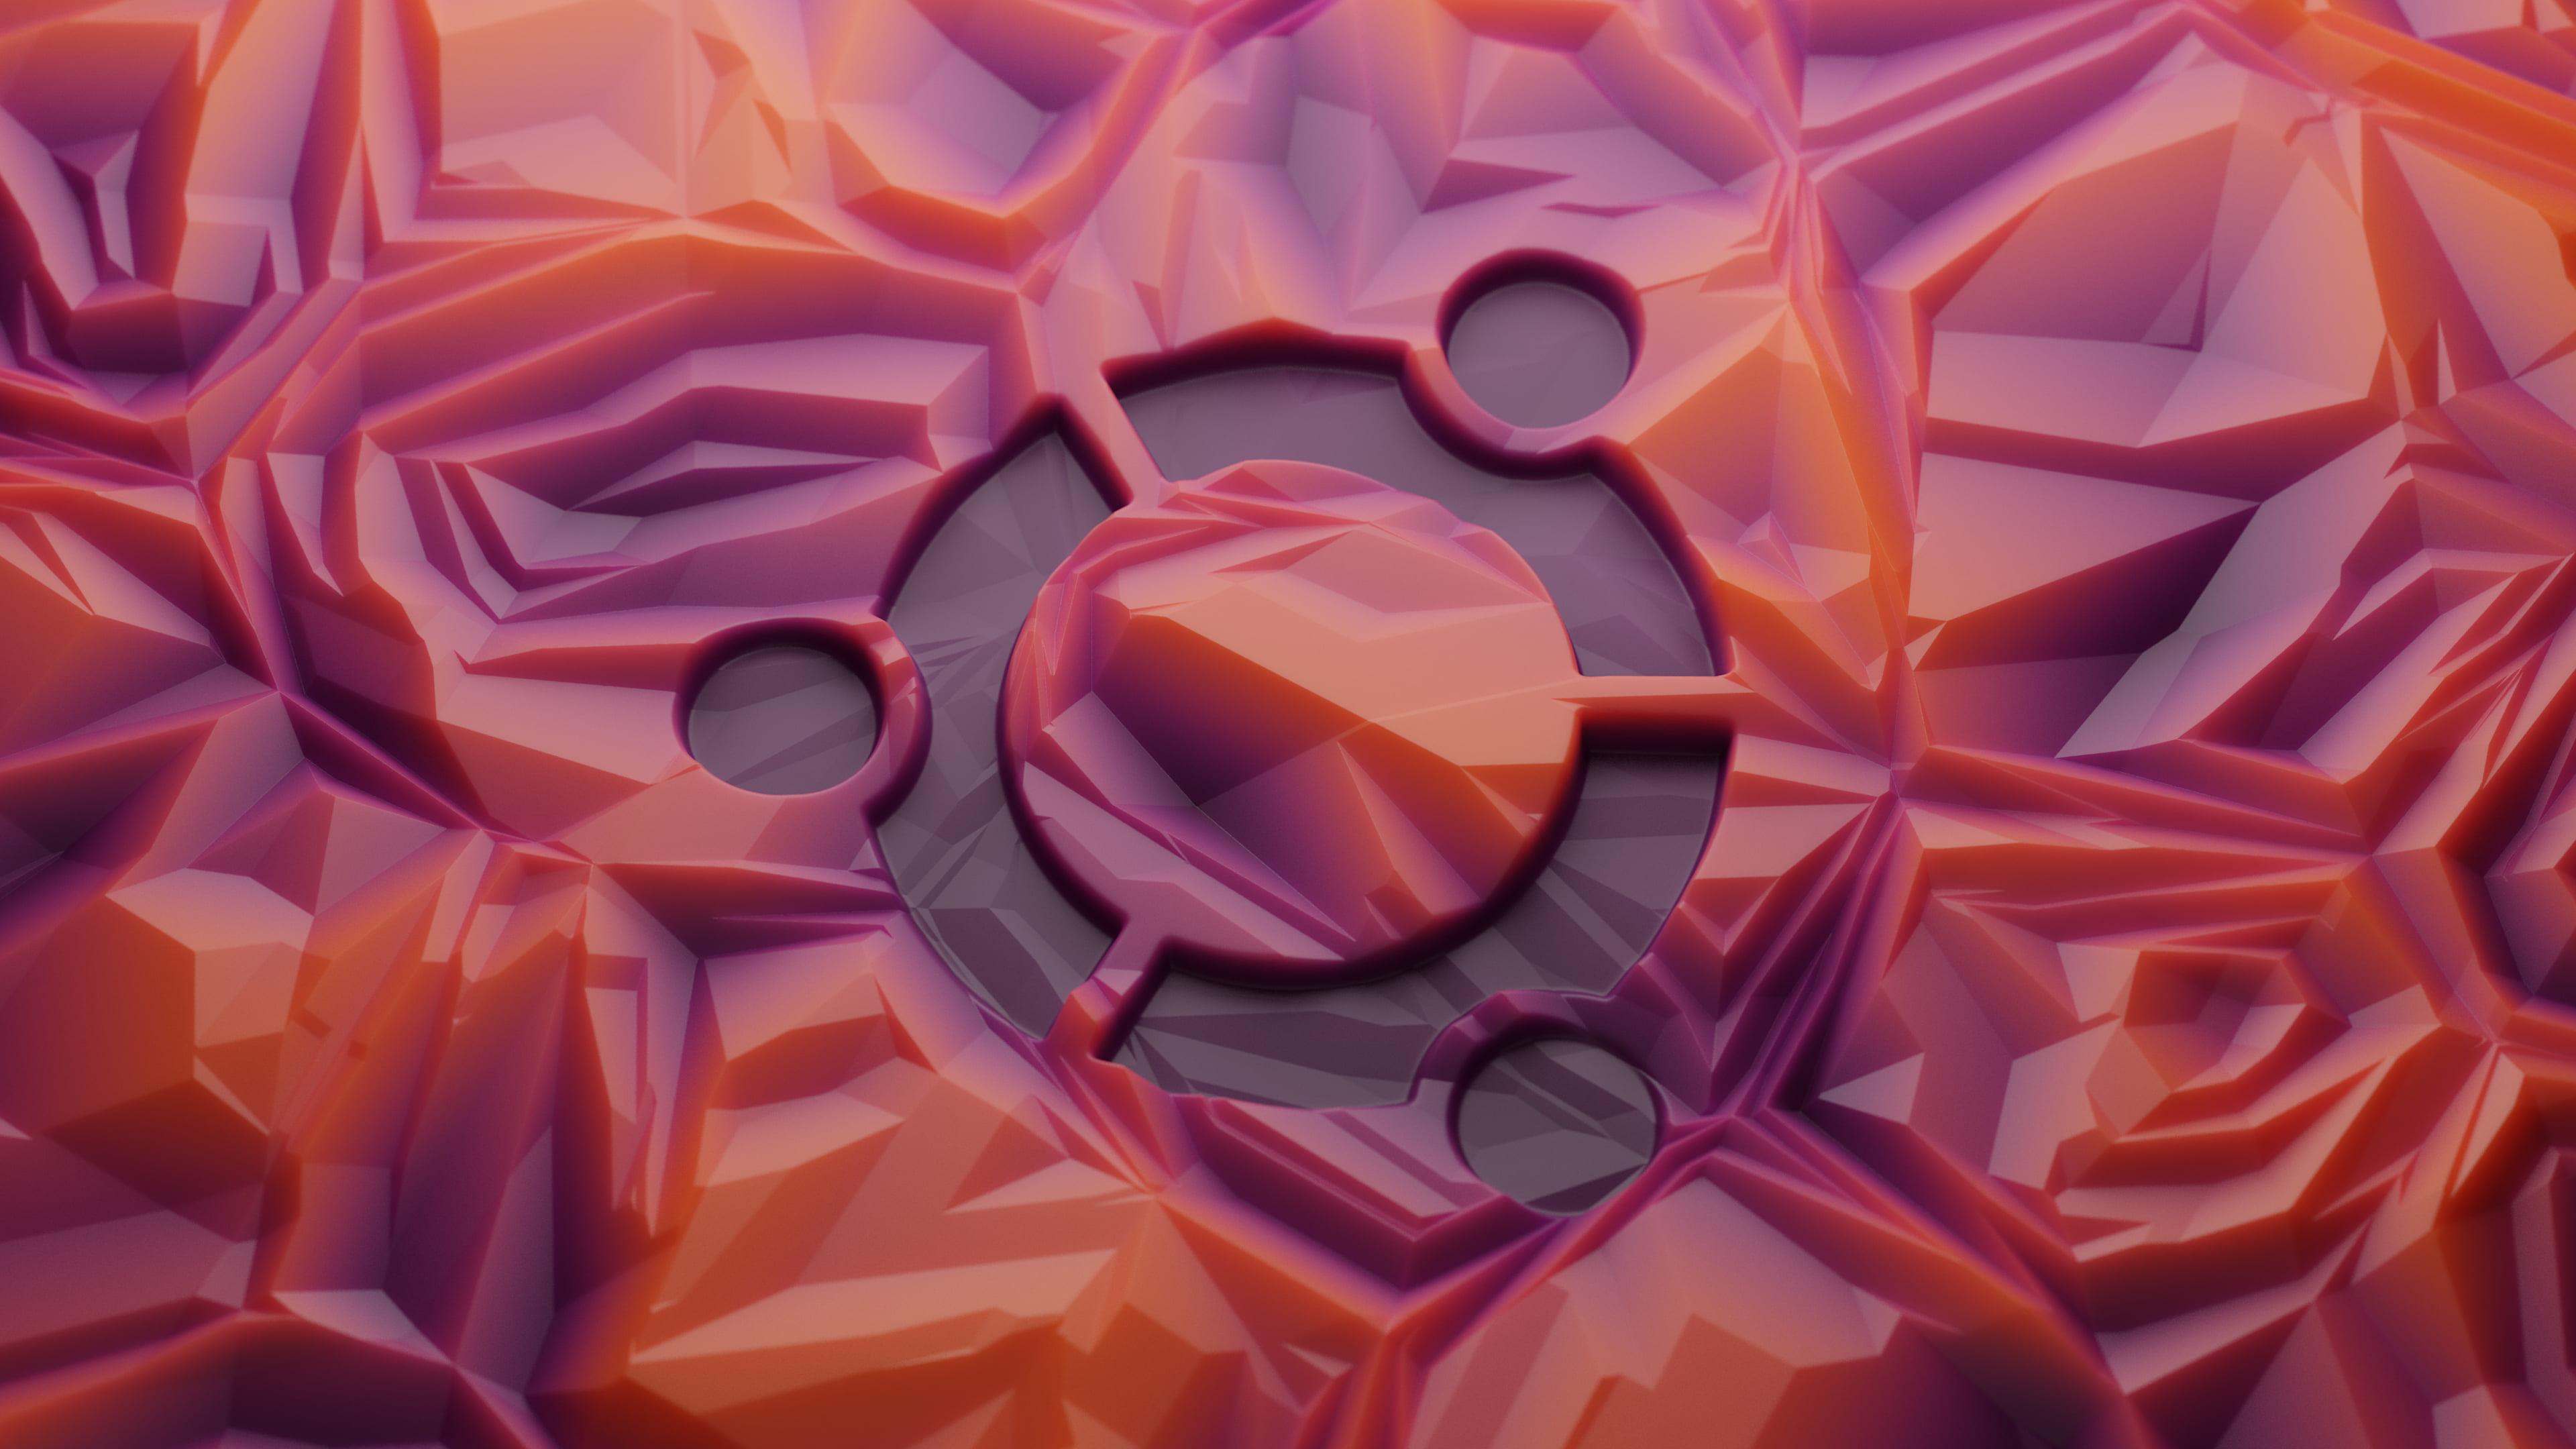 Ubuntu gel by Midge Mantissa Sinnaeve - دانلود Ubuntu 19.10 یا Eoan Ermine